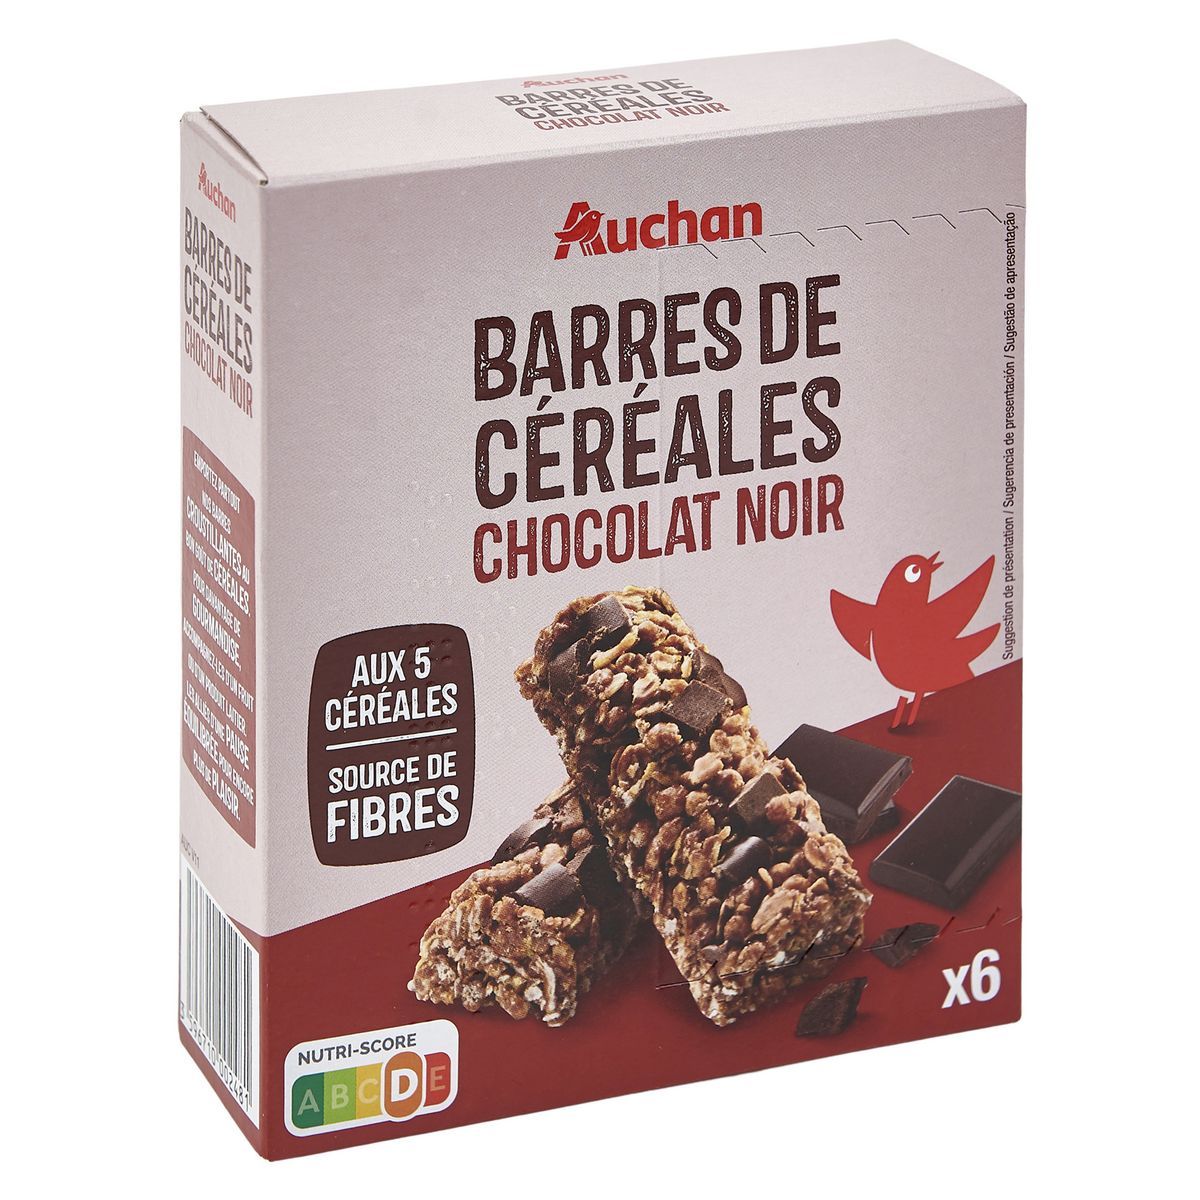 BARRES DE CÉRÉALES CHOCOLAT NOIR AUCHAN